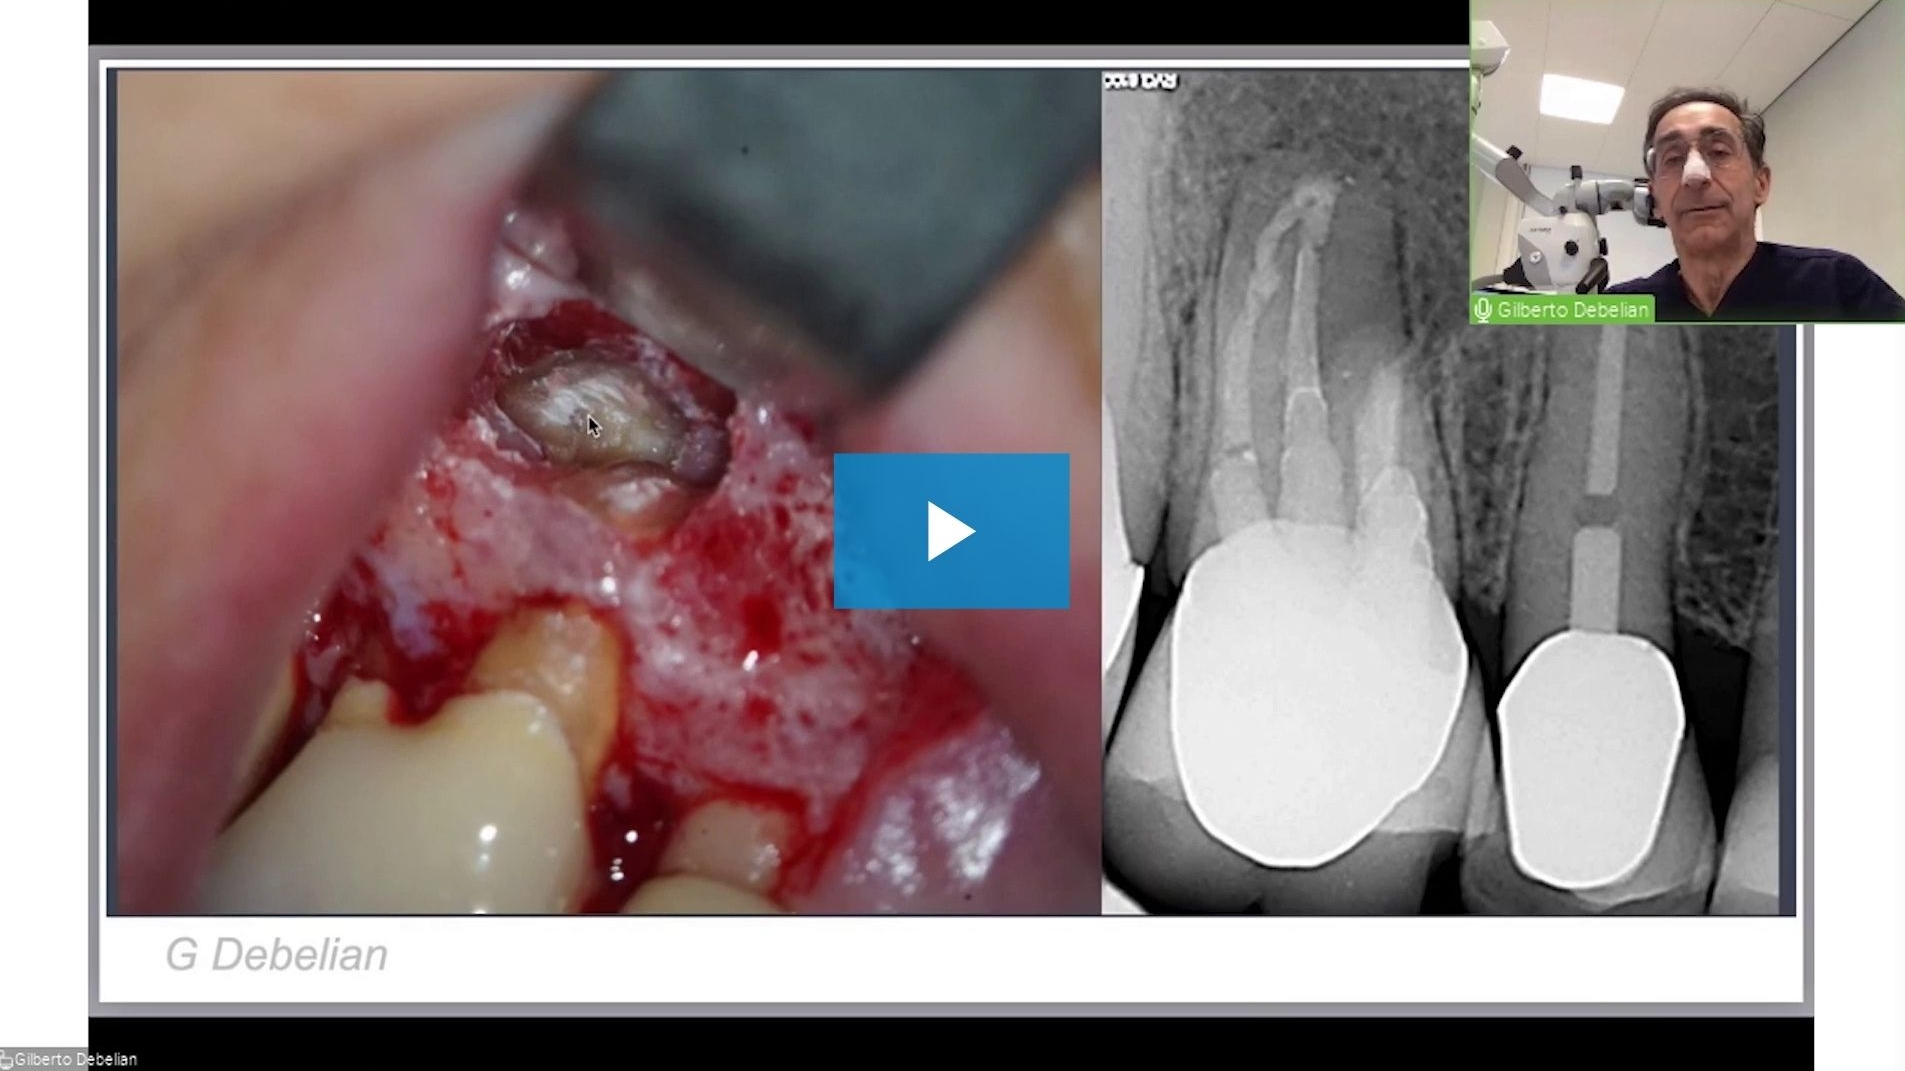 618-dental-week-2021-endodontic-webinar-by-dr--gilberto-debelian_preview.jpg